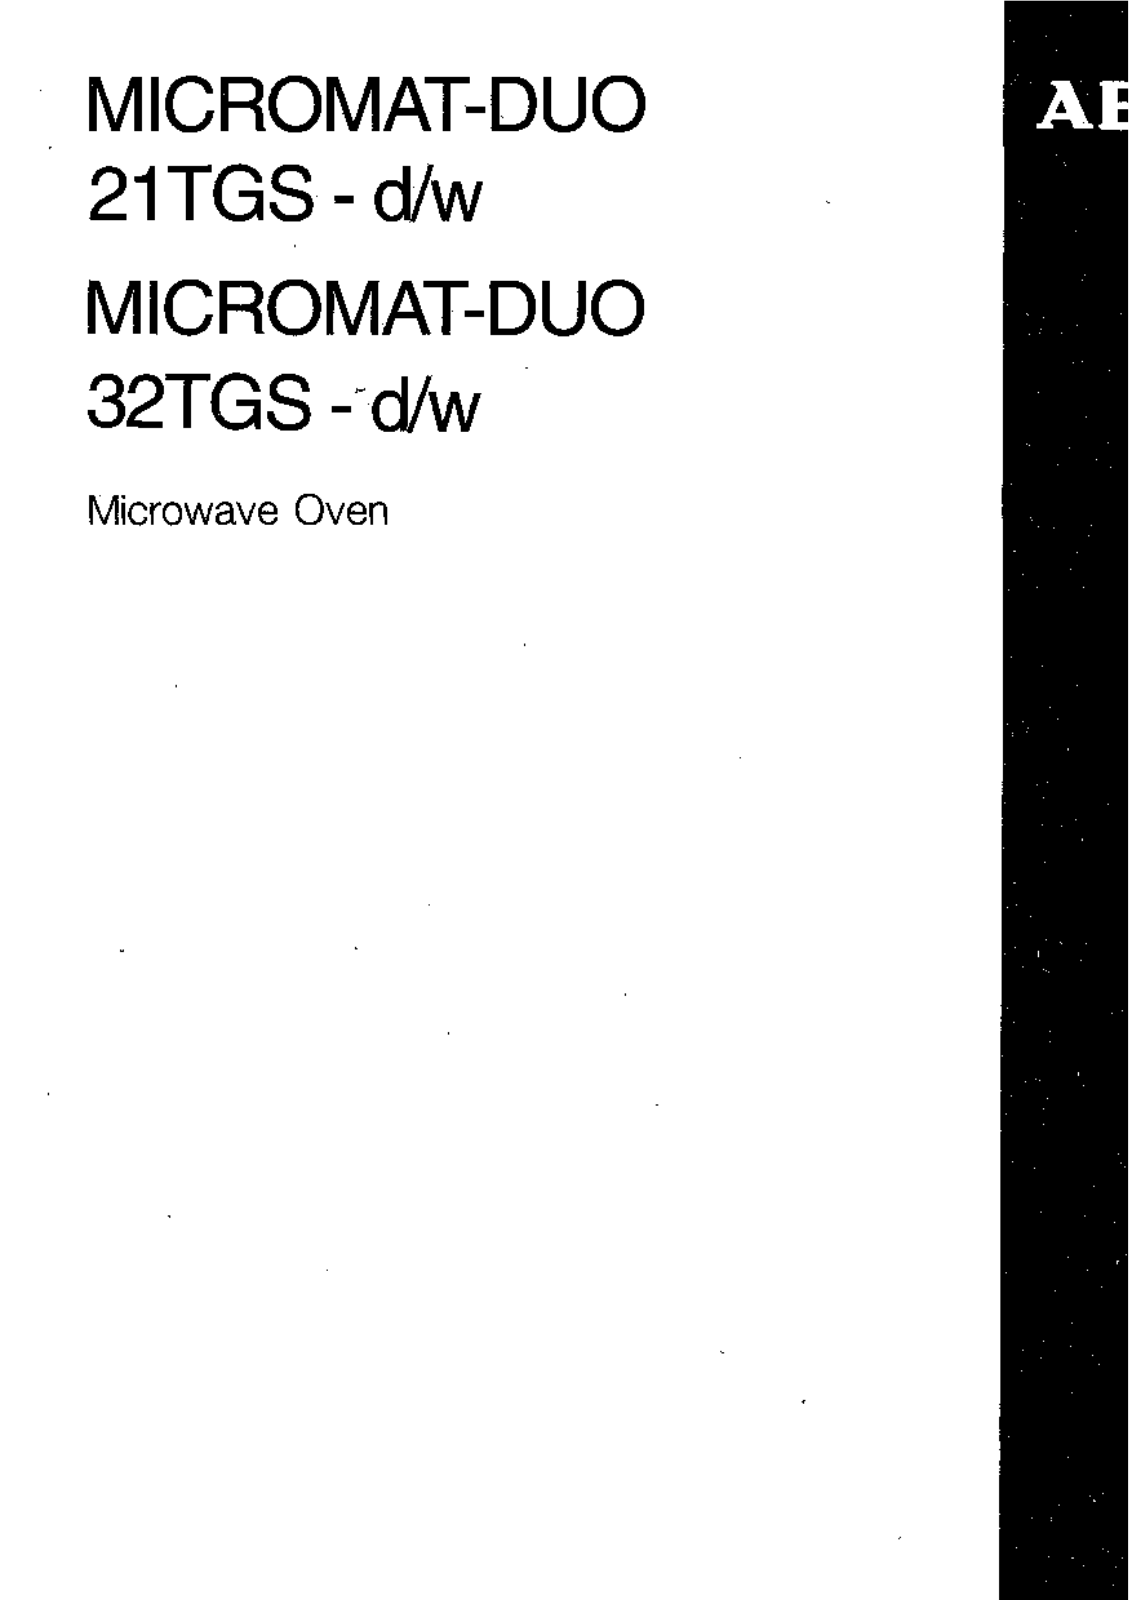 AEG-Electrolux MCDUO32TGS-W-GB User Manual